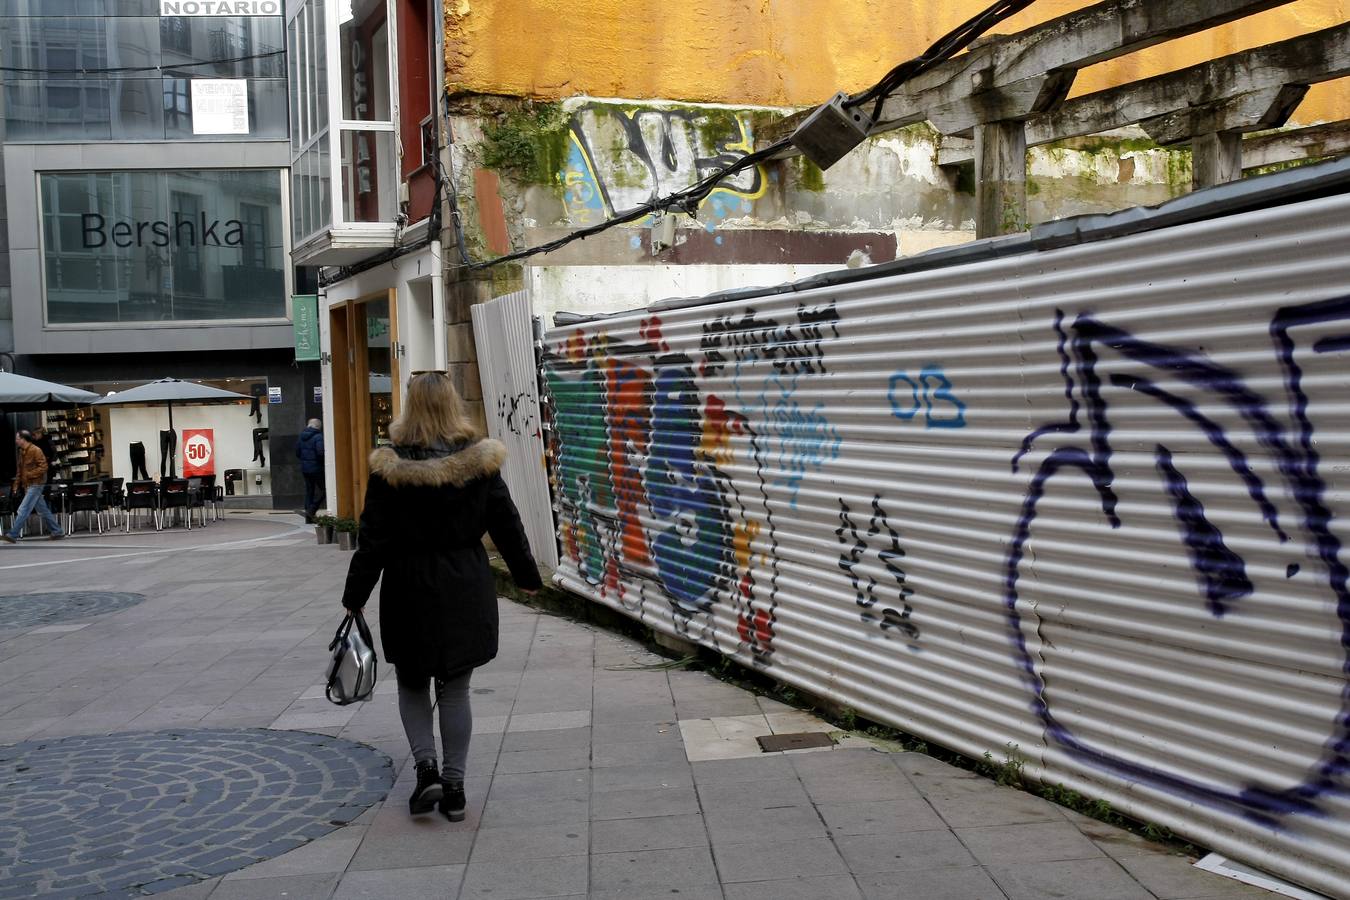 Pintadas y grafitis en las calles de Torrelavega